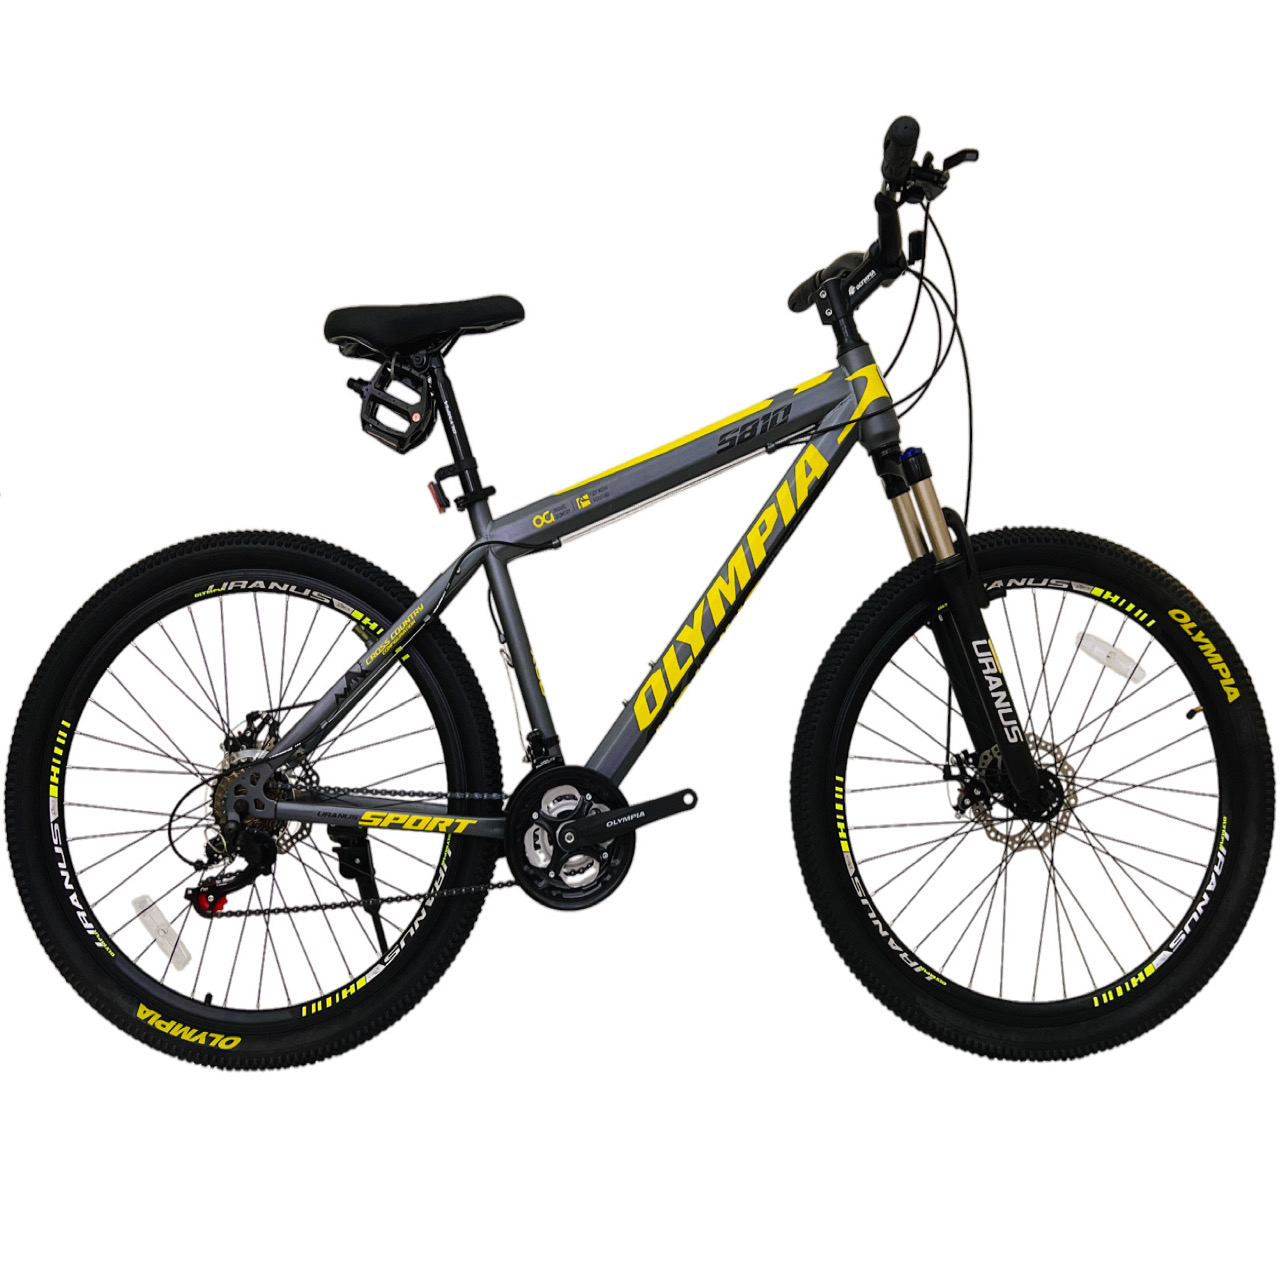 نکته خرید - قیمت روز دوچرخه کوهستان المپیا مدل STEEL SPORT کد 5810 سایز 27.5 خرید